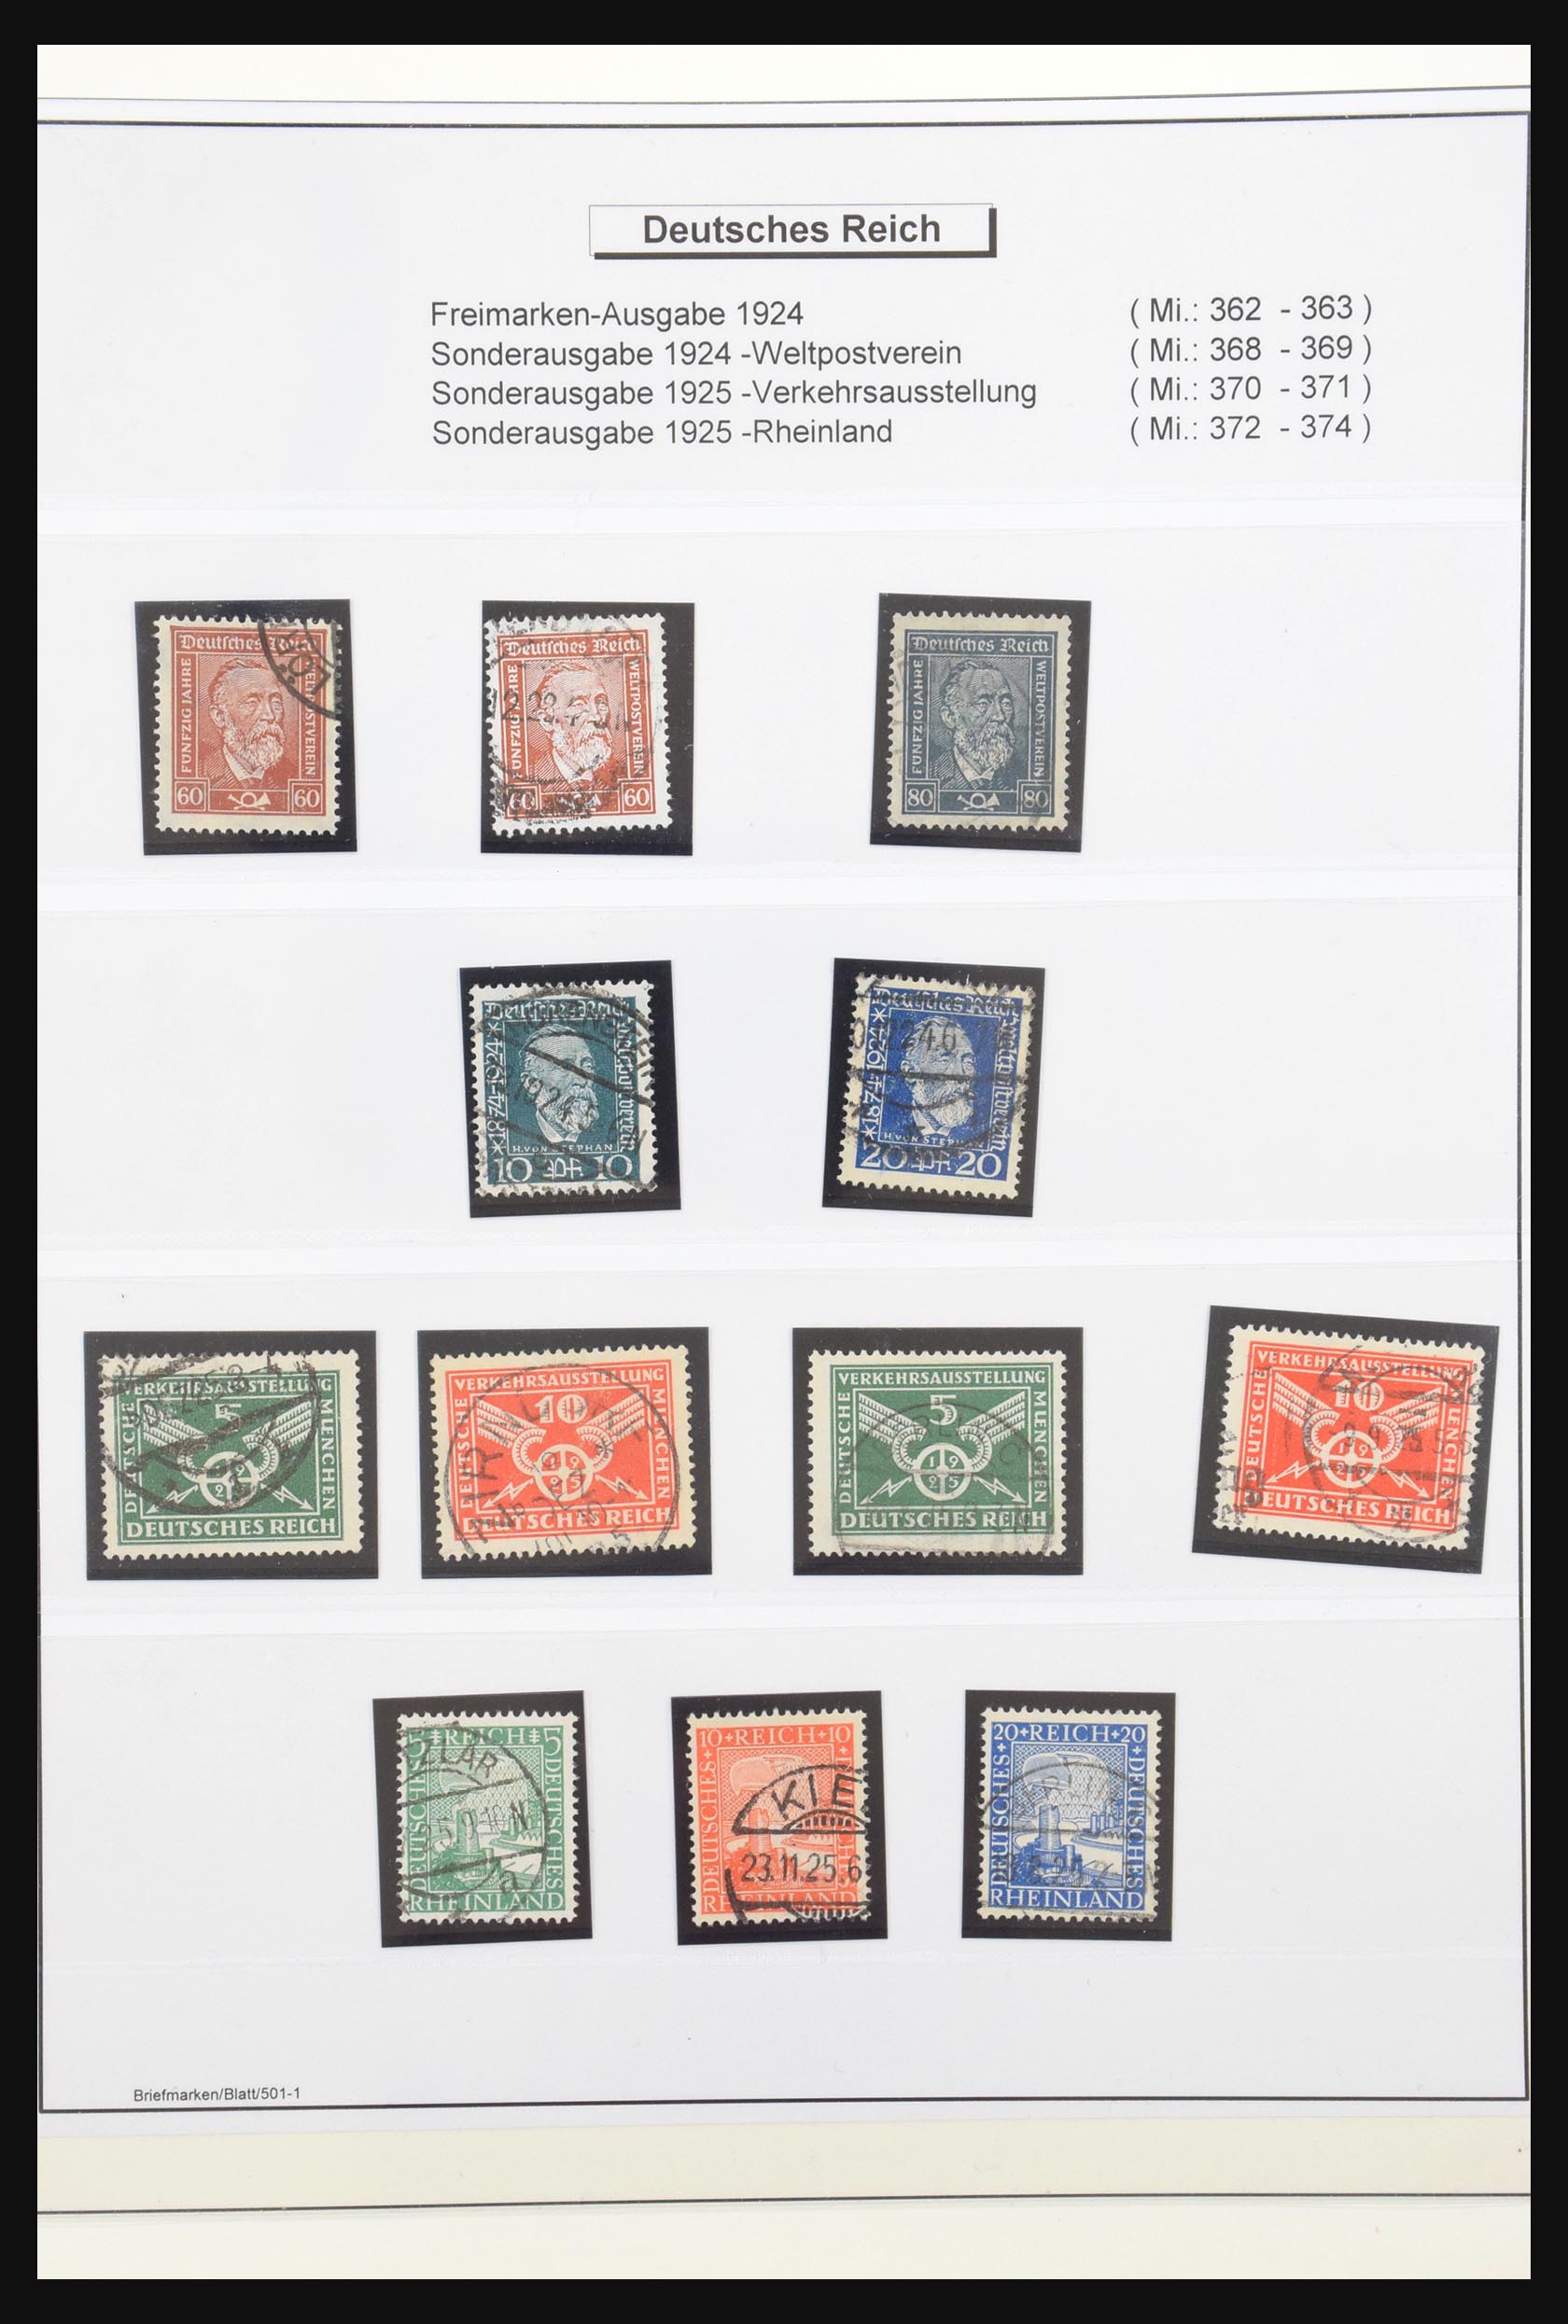 31266 004 - 31266 Duitsland 1923-1932.